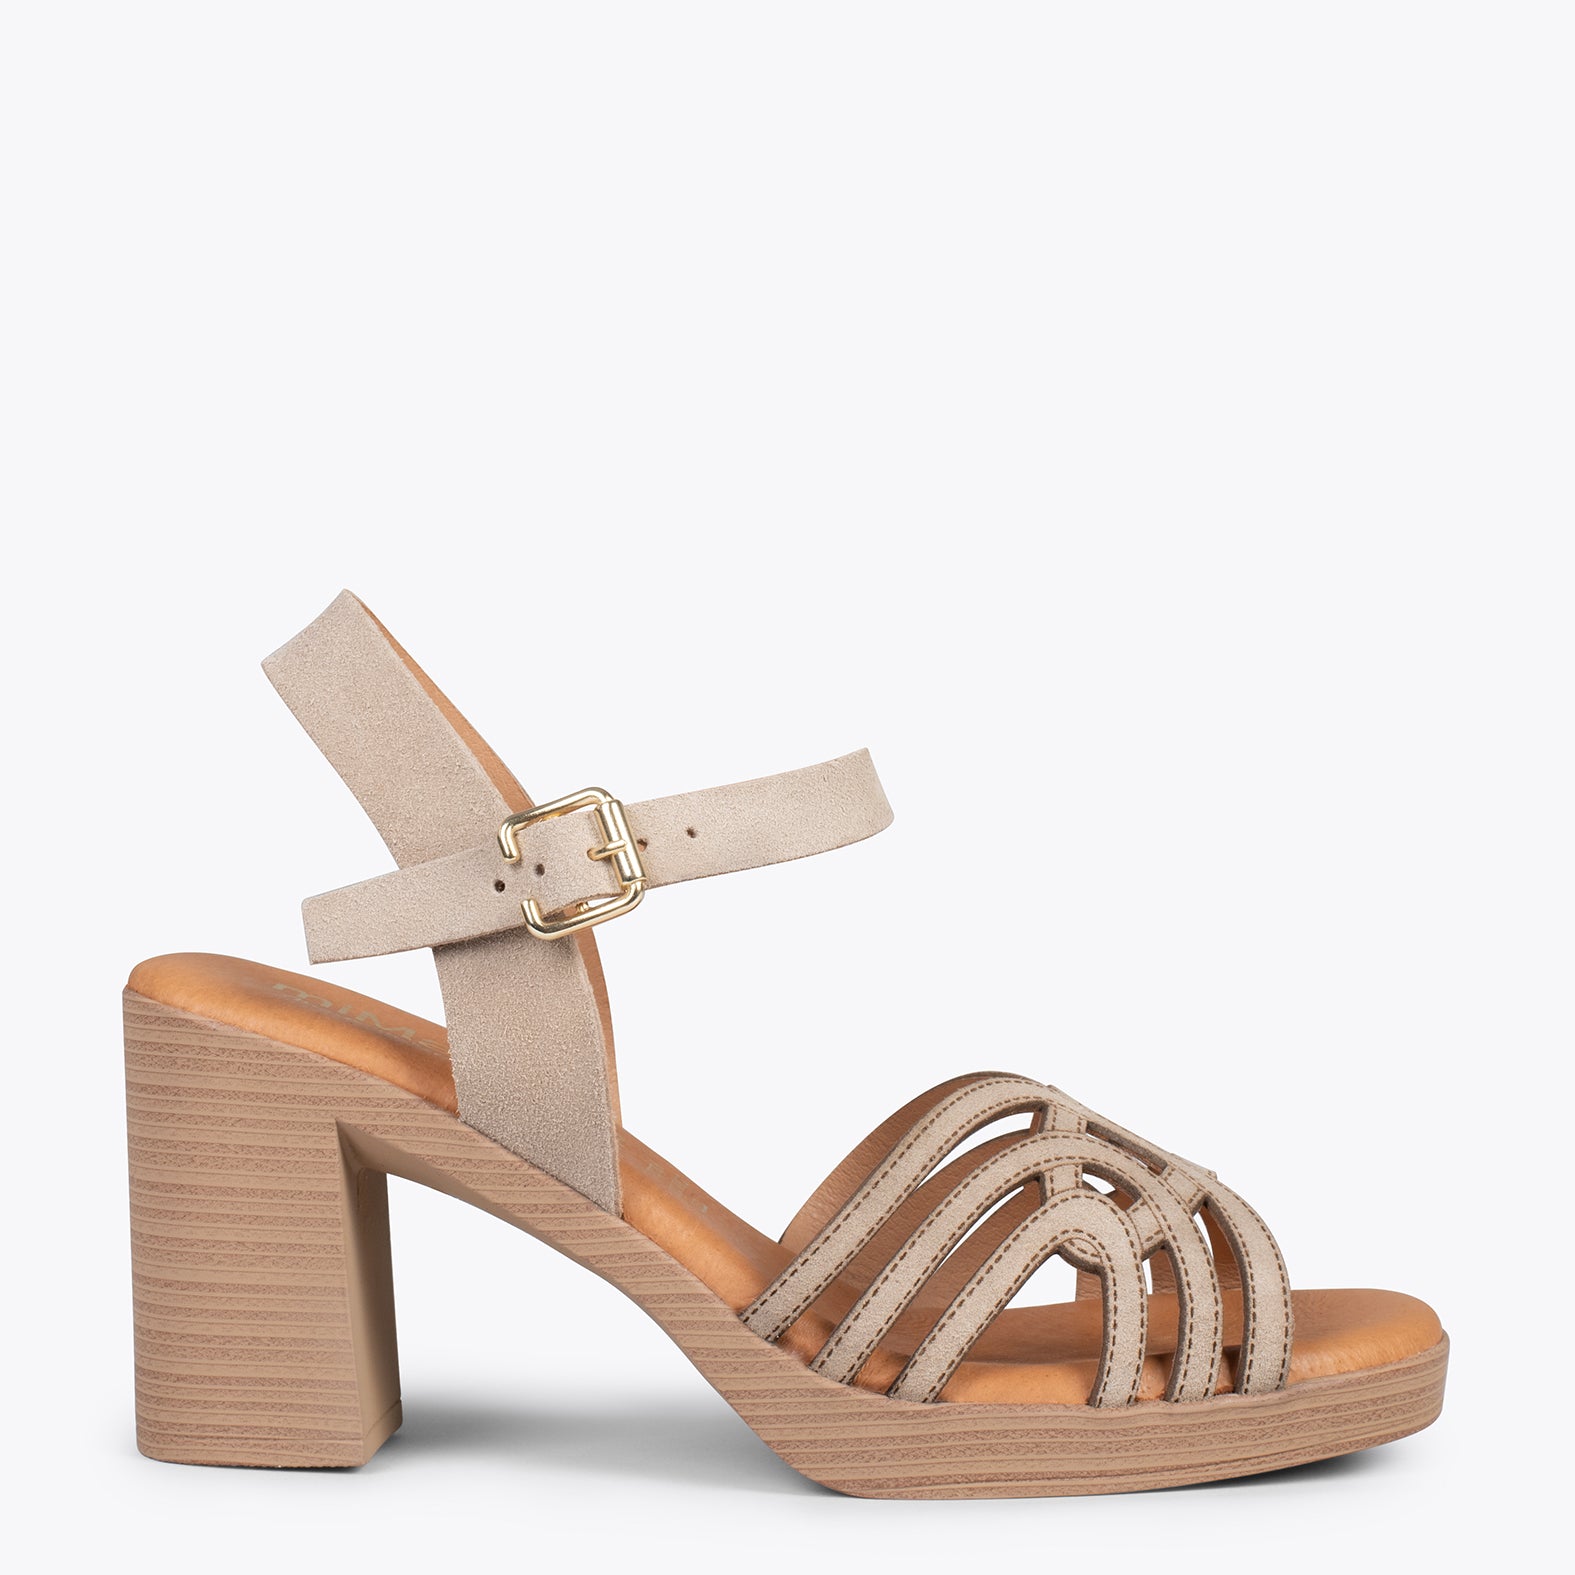 CIBELES – TAUPE wooden block heel sandal